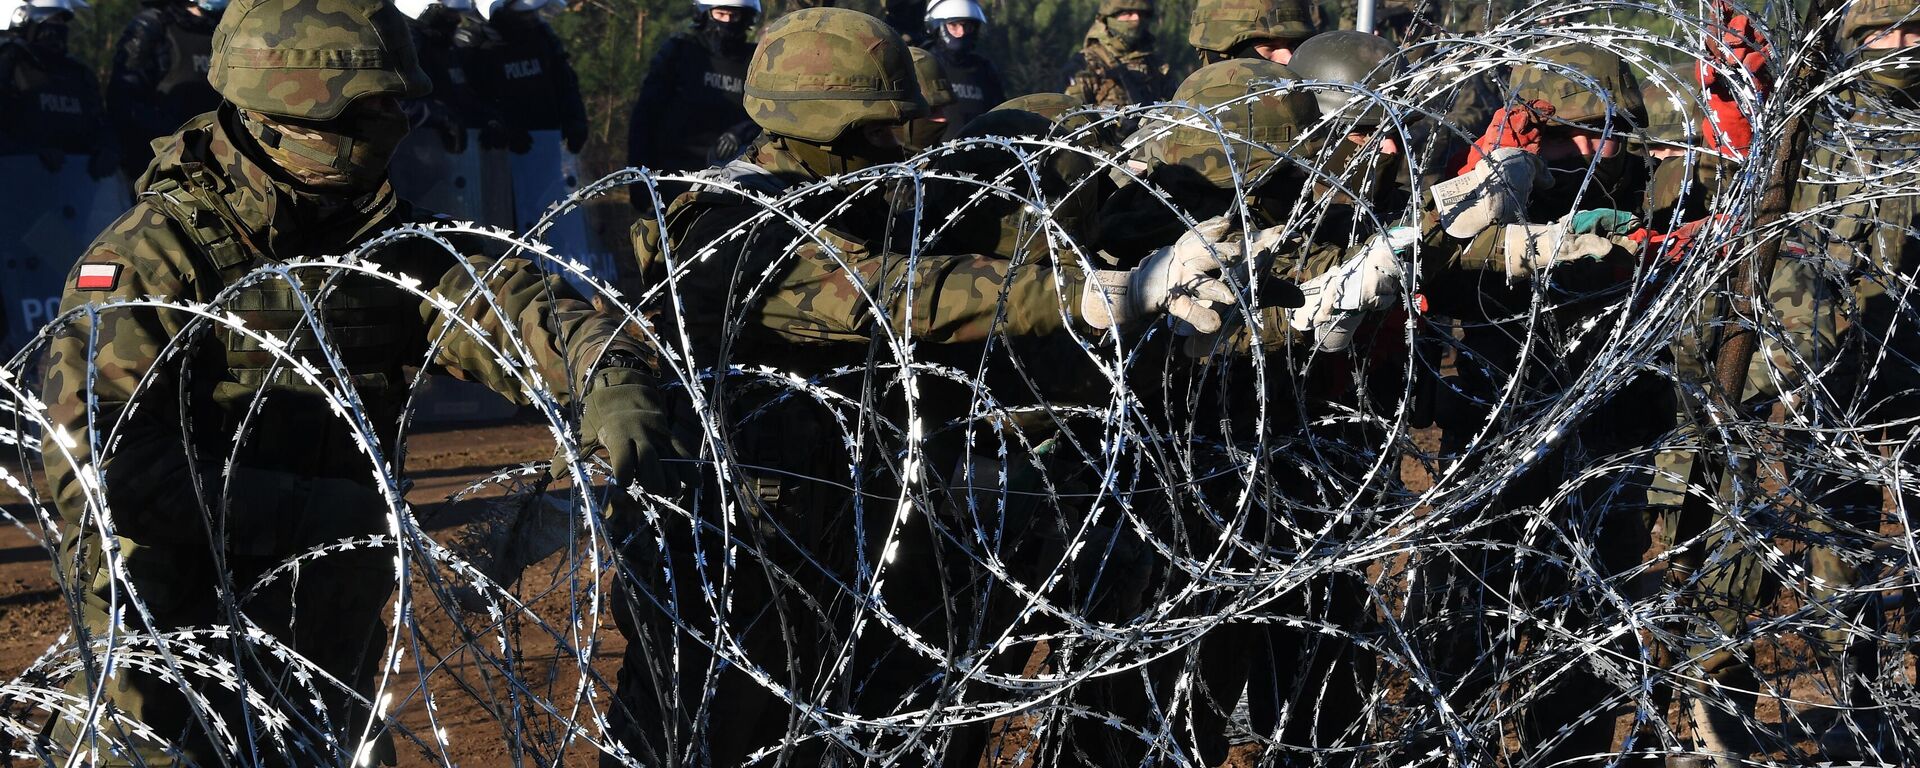 Польские военнослужащие устанавливают забор из колючей проволоки на польско-белорусской границе - Sputnik Латвия, 1920, 10.11.2021